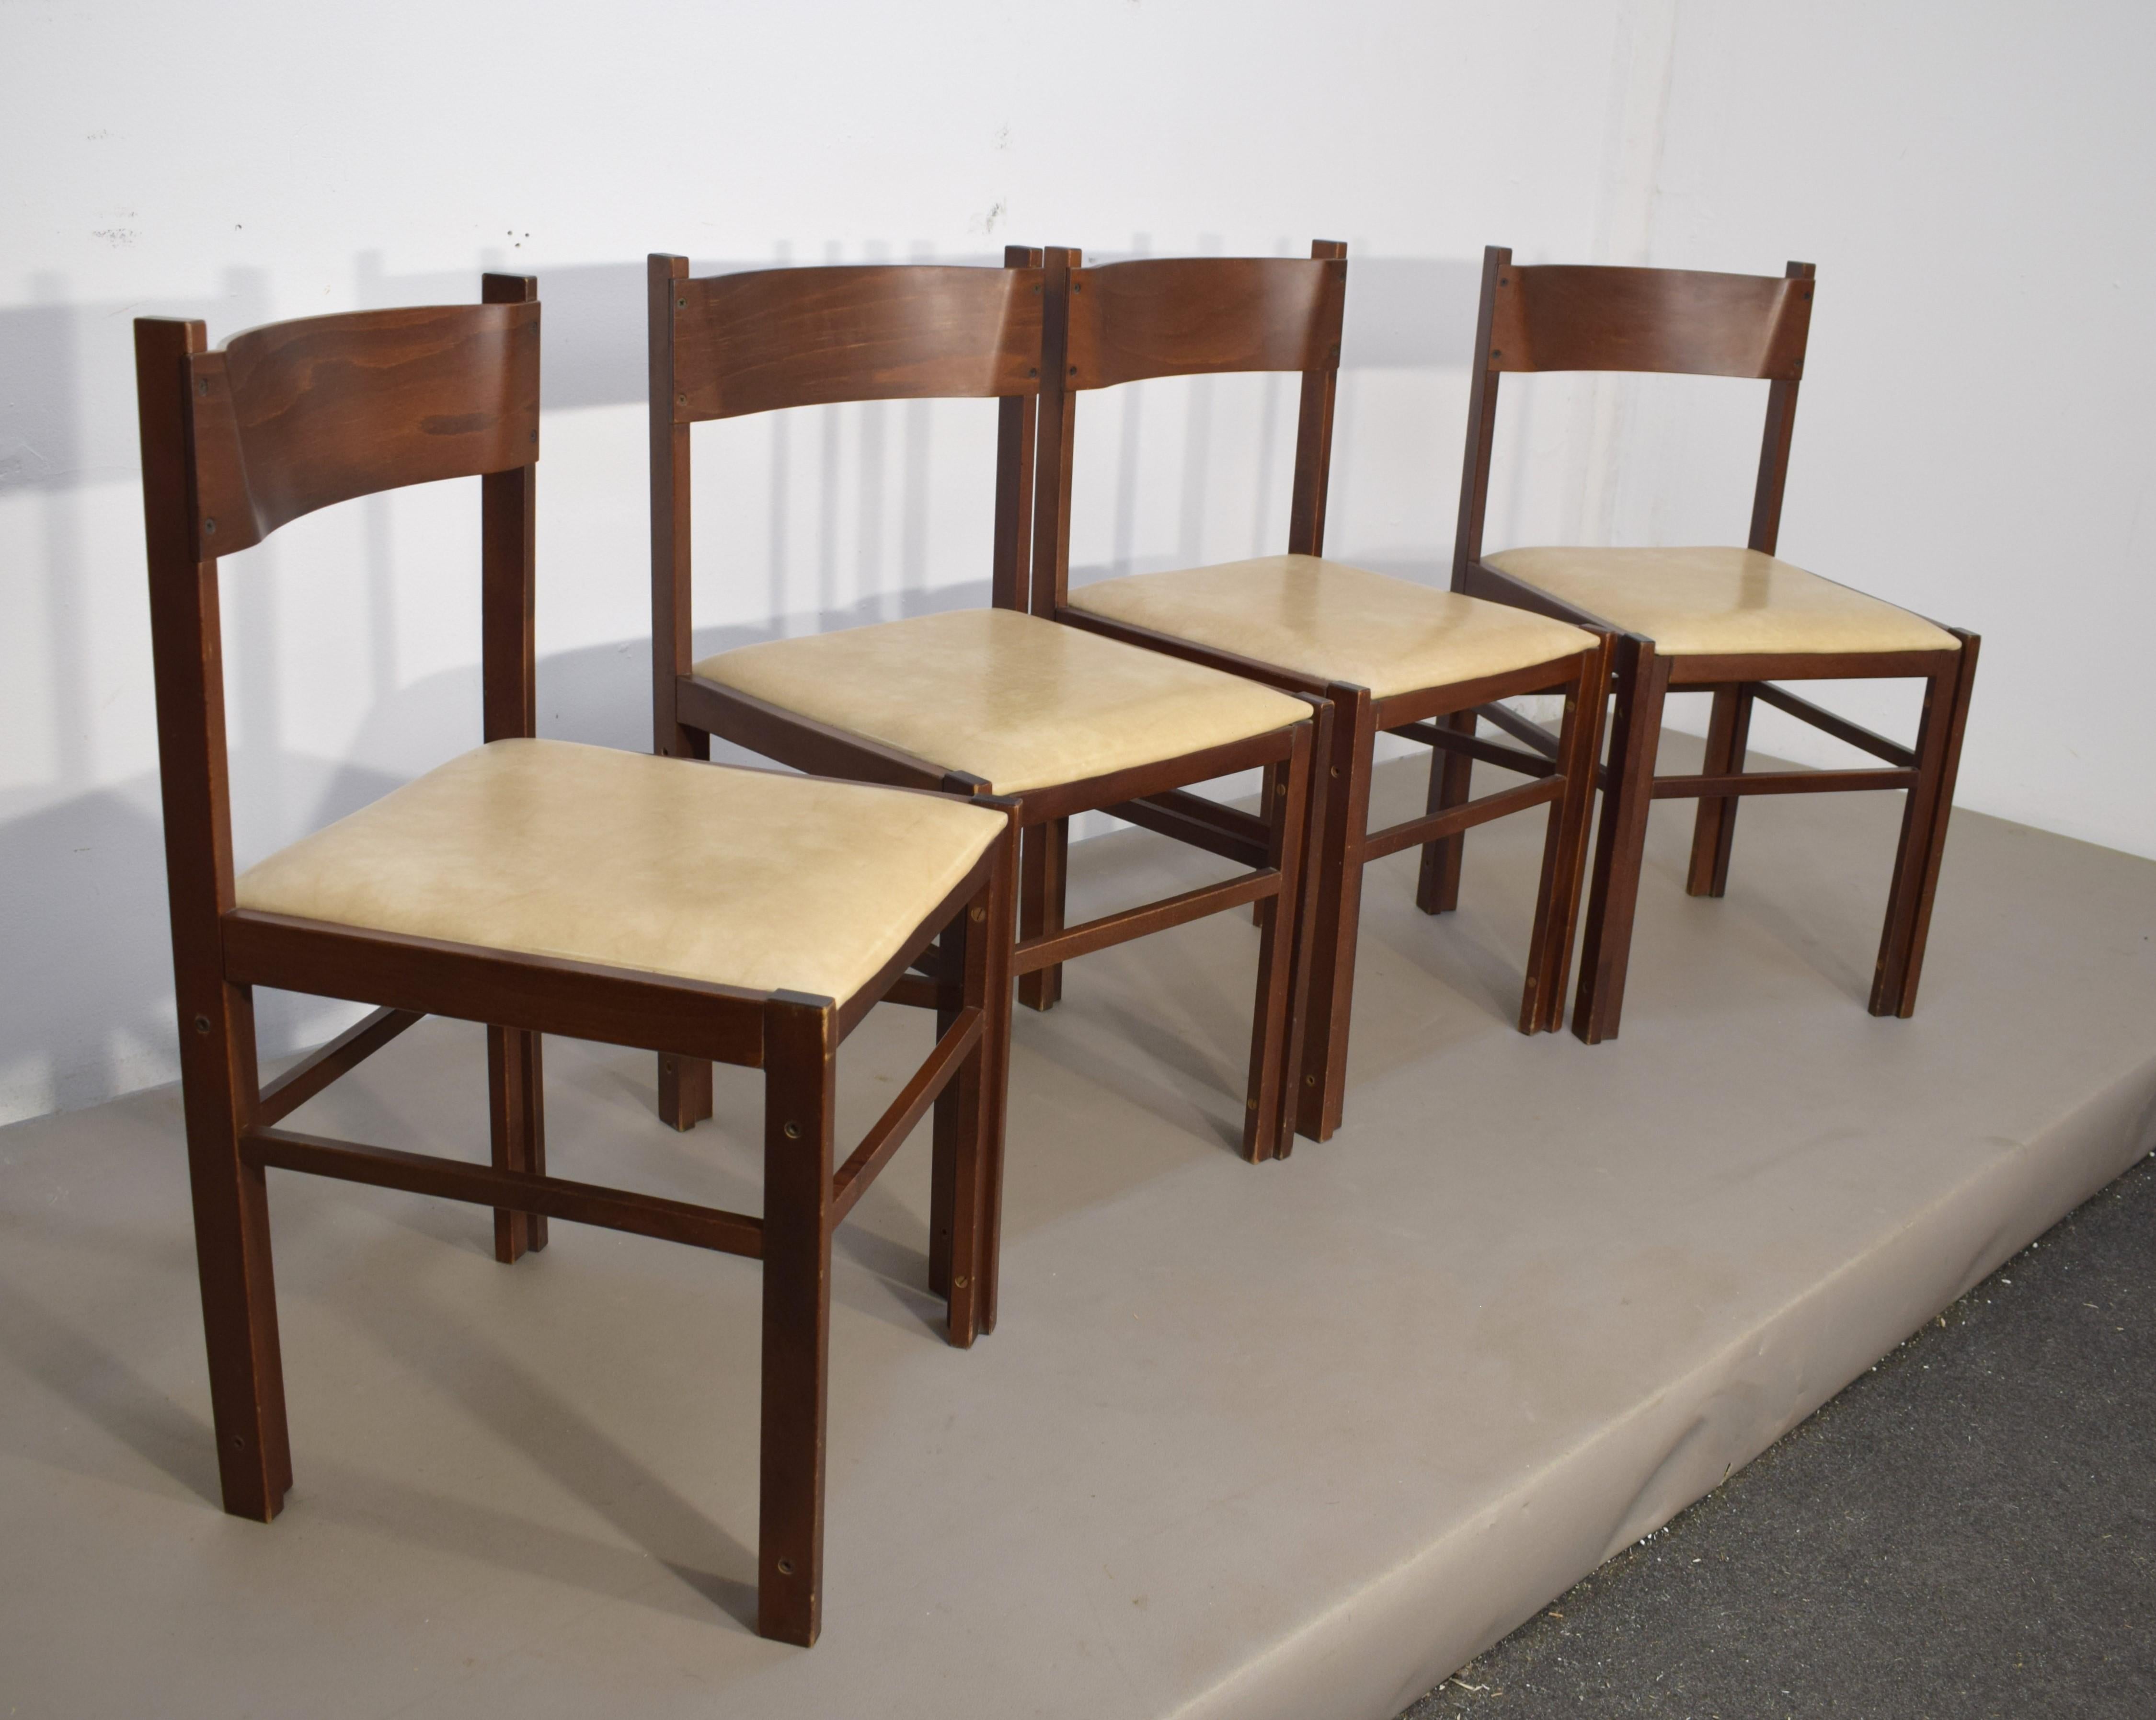 Satz italienischer Stühle von Dal Vera, 1960er Jahre.

Abmessungen: H= 79 cm; B= 42 cm; T= 43 cm; H-Sitz= 44 cm.